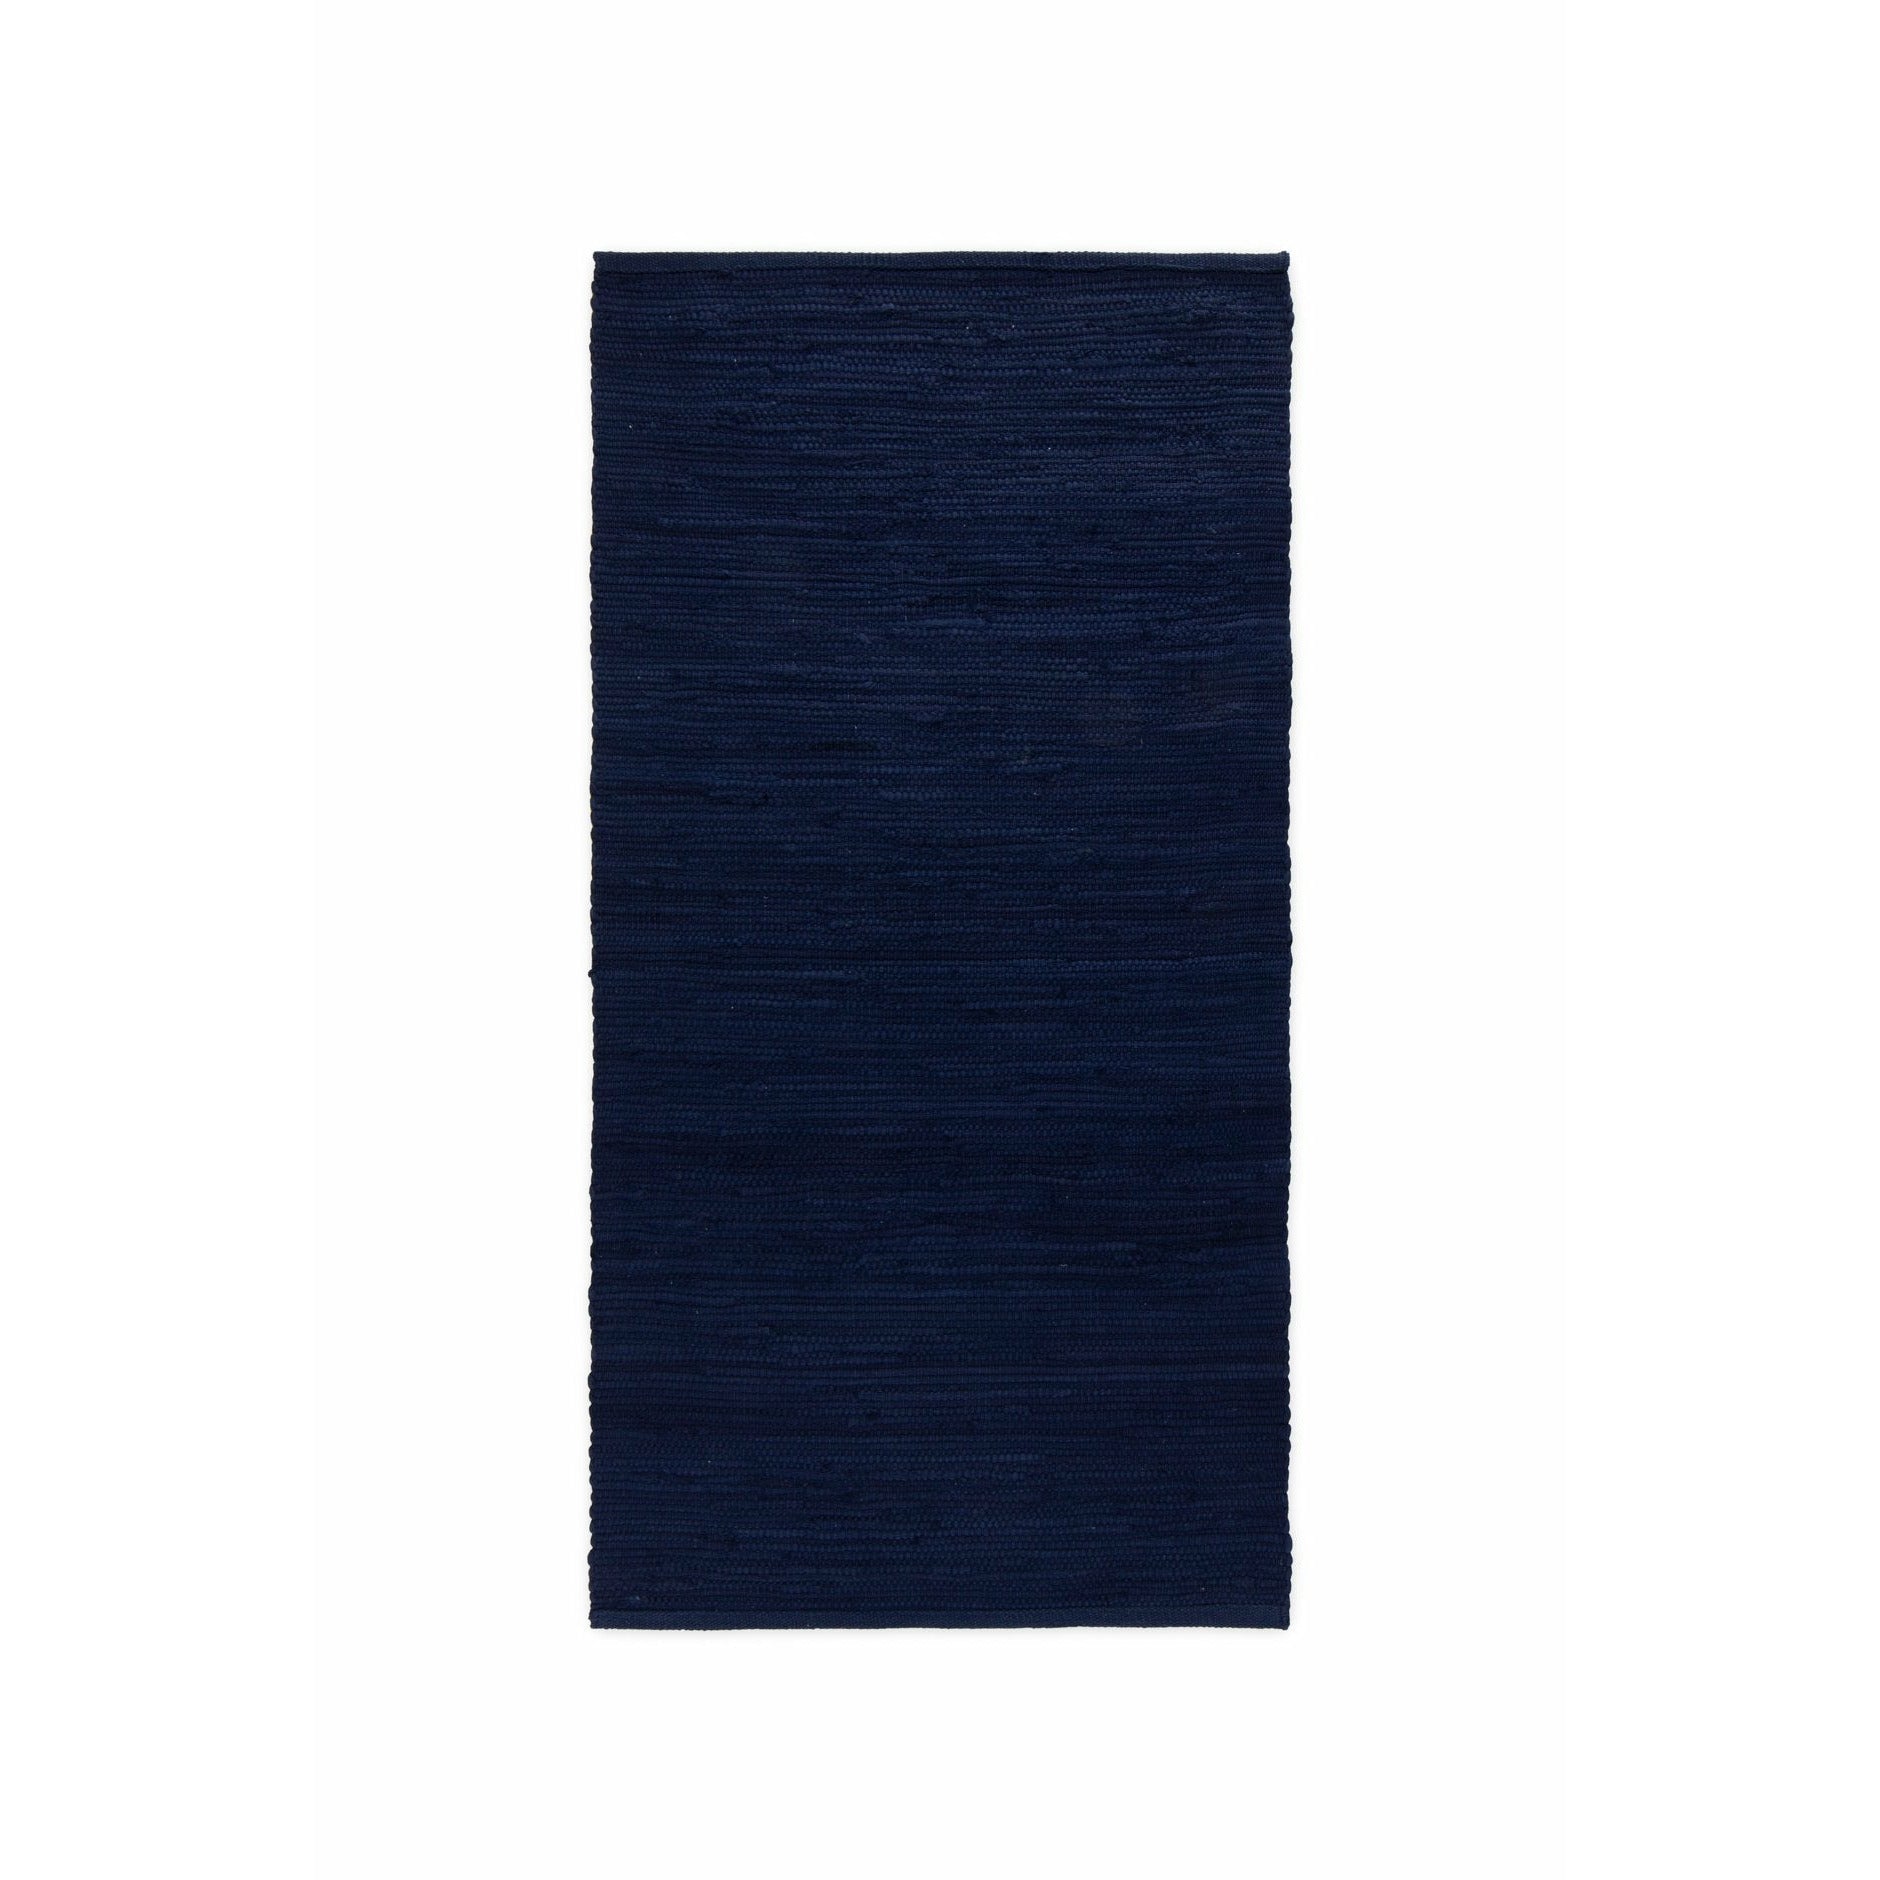 Dywany bawełniany dywan głęboki ocean niebieski, 140 x 200 cm